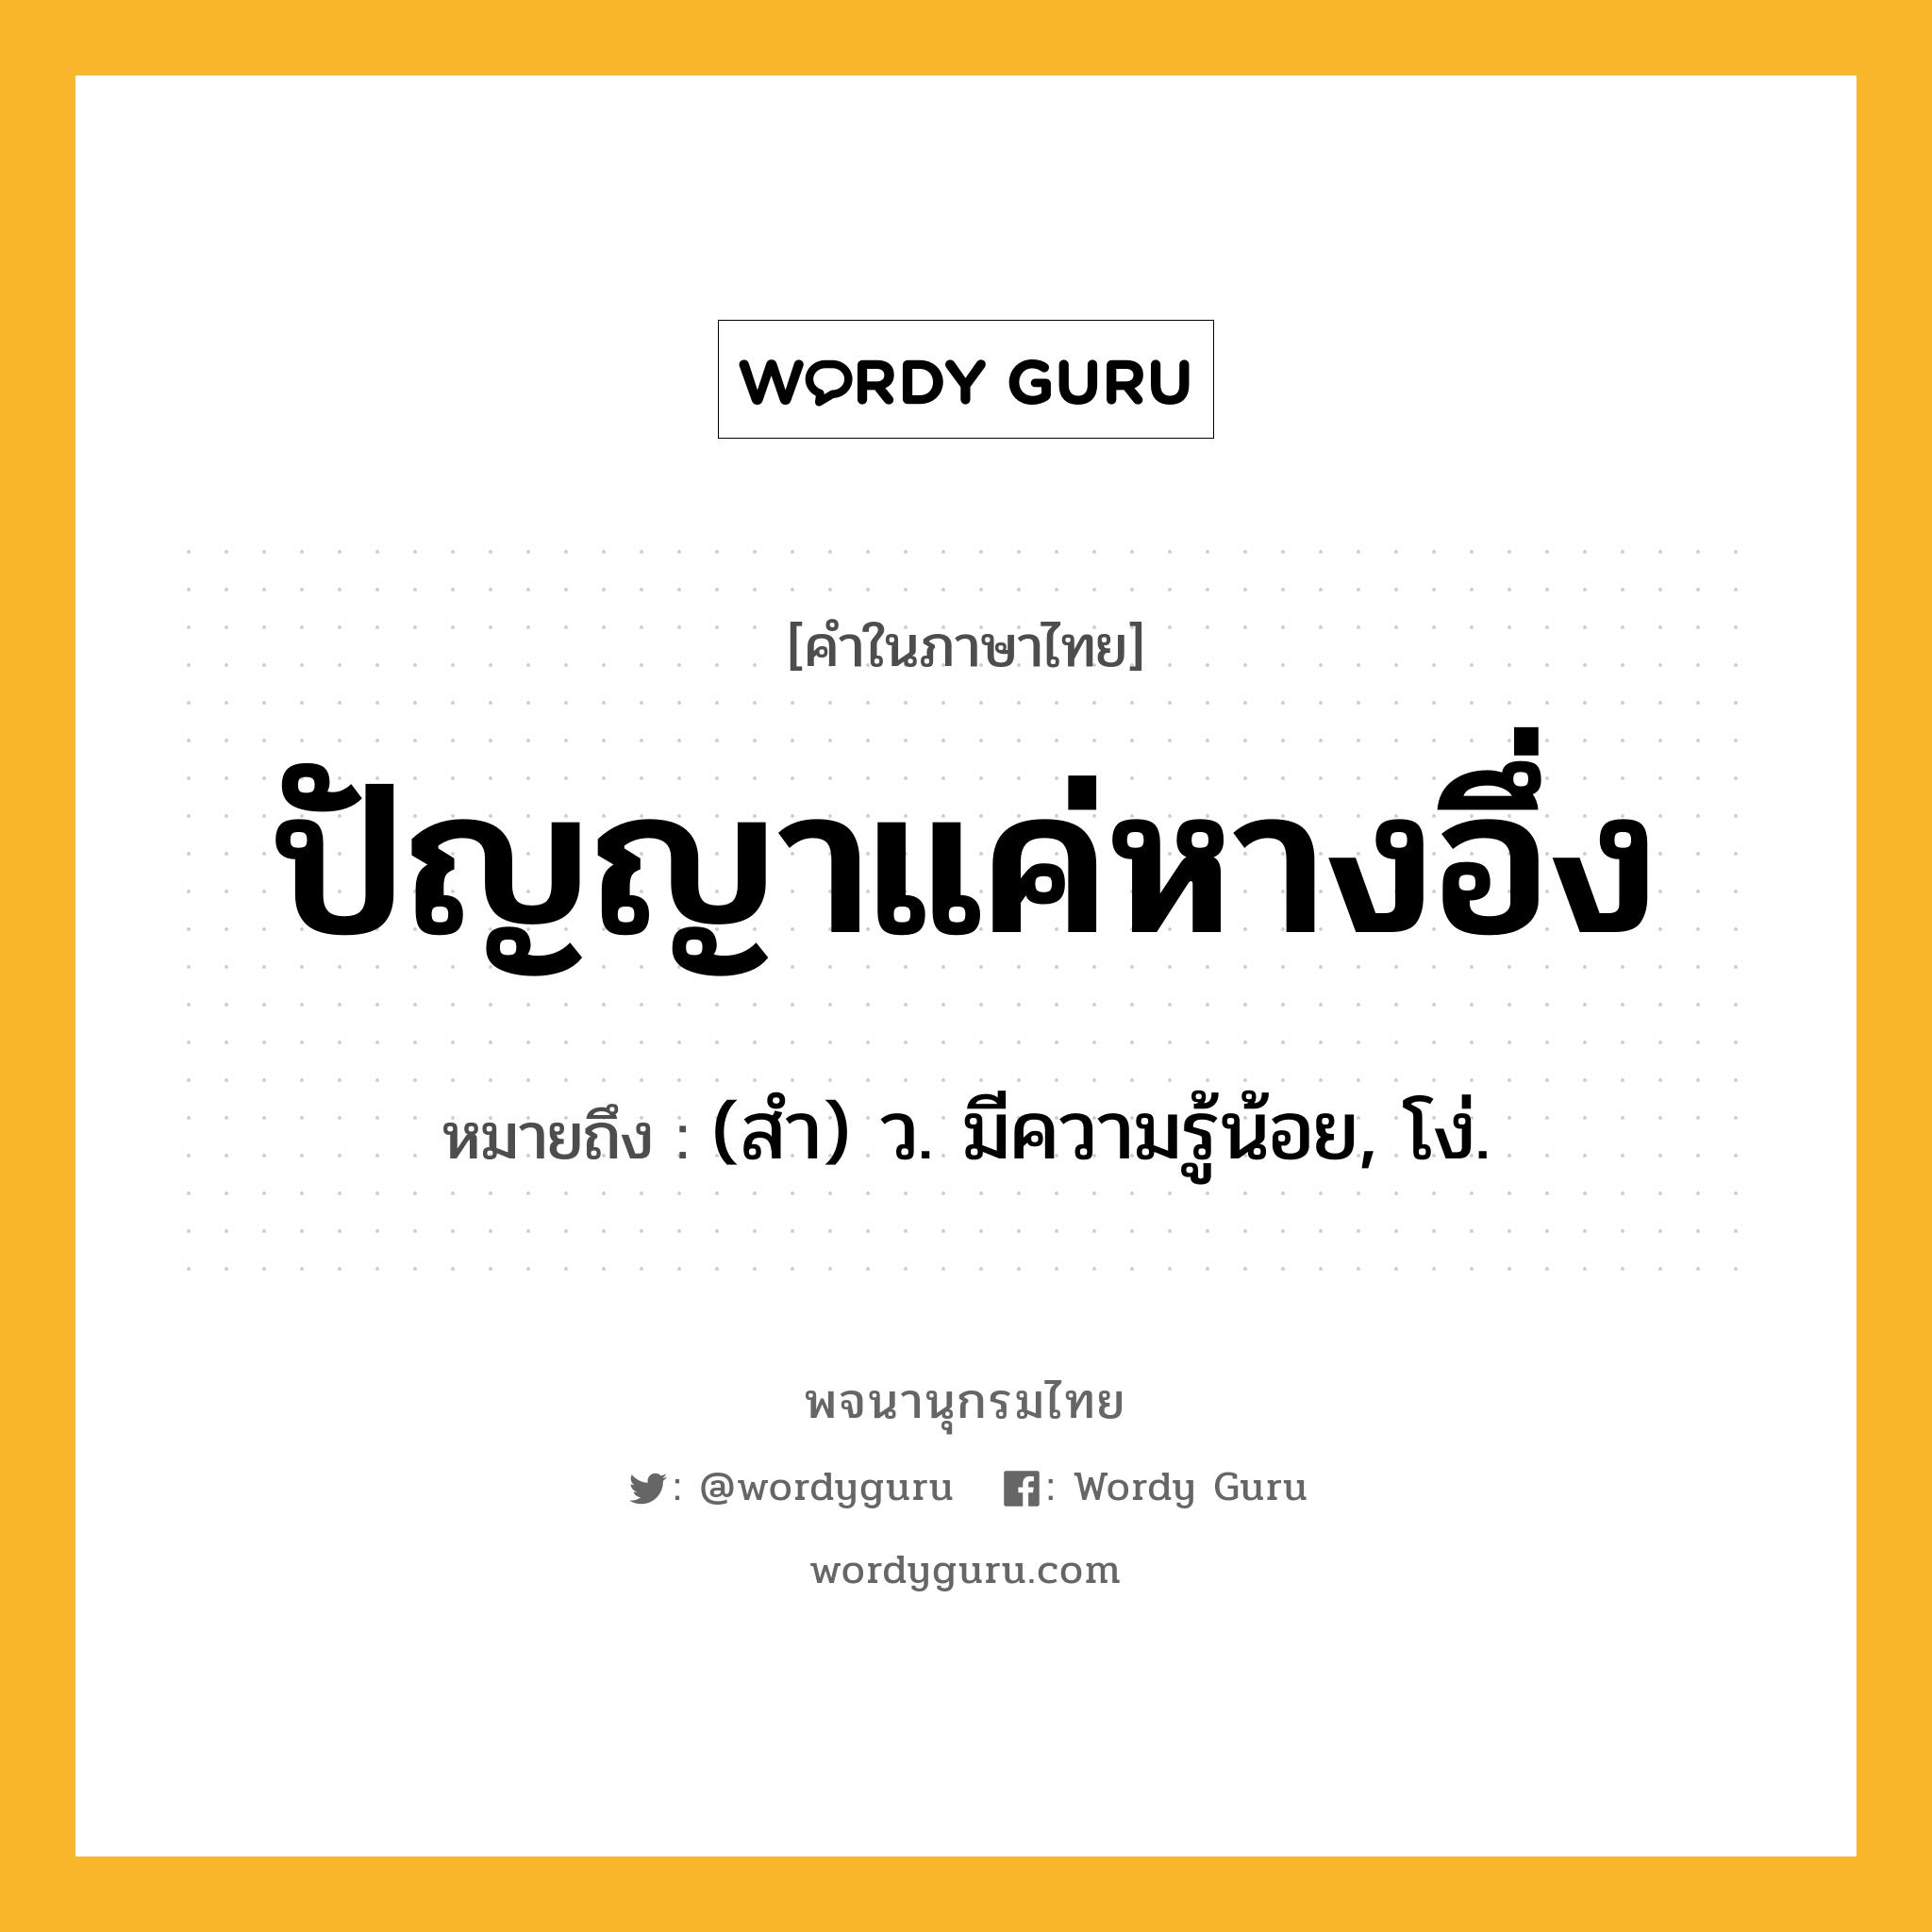 ปัญญาแค่หางอึ่ง หมายถึงอะไร?, คำในภาษาไทย ปัญญาแค่หางอึ่ง หมายถึง (สํา) ว. มีความรู้น้อย, โง่.